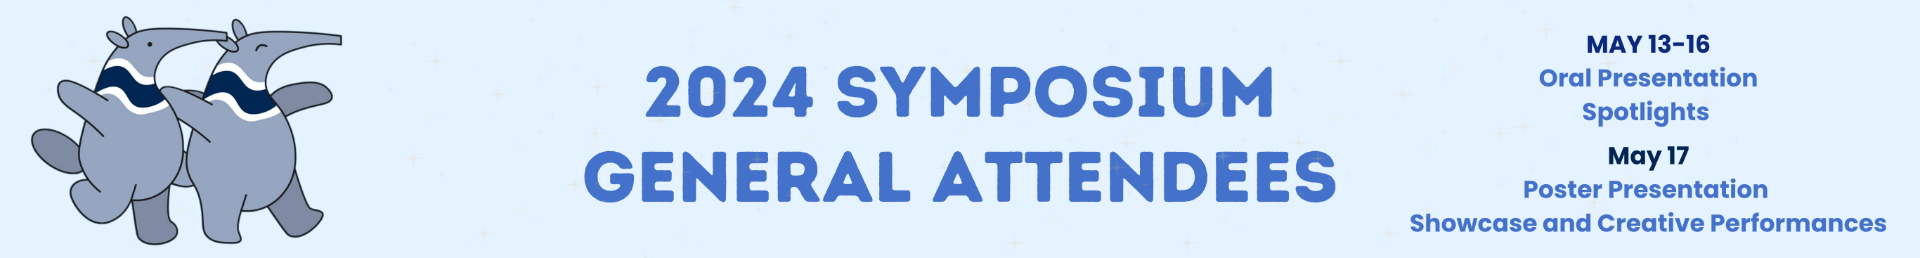 Symposium General Attendees Webpage